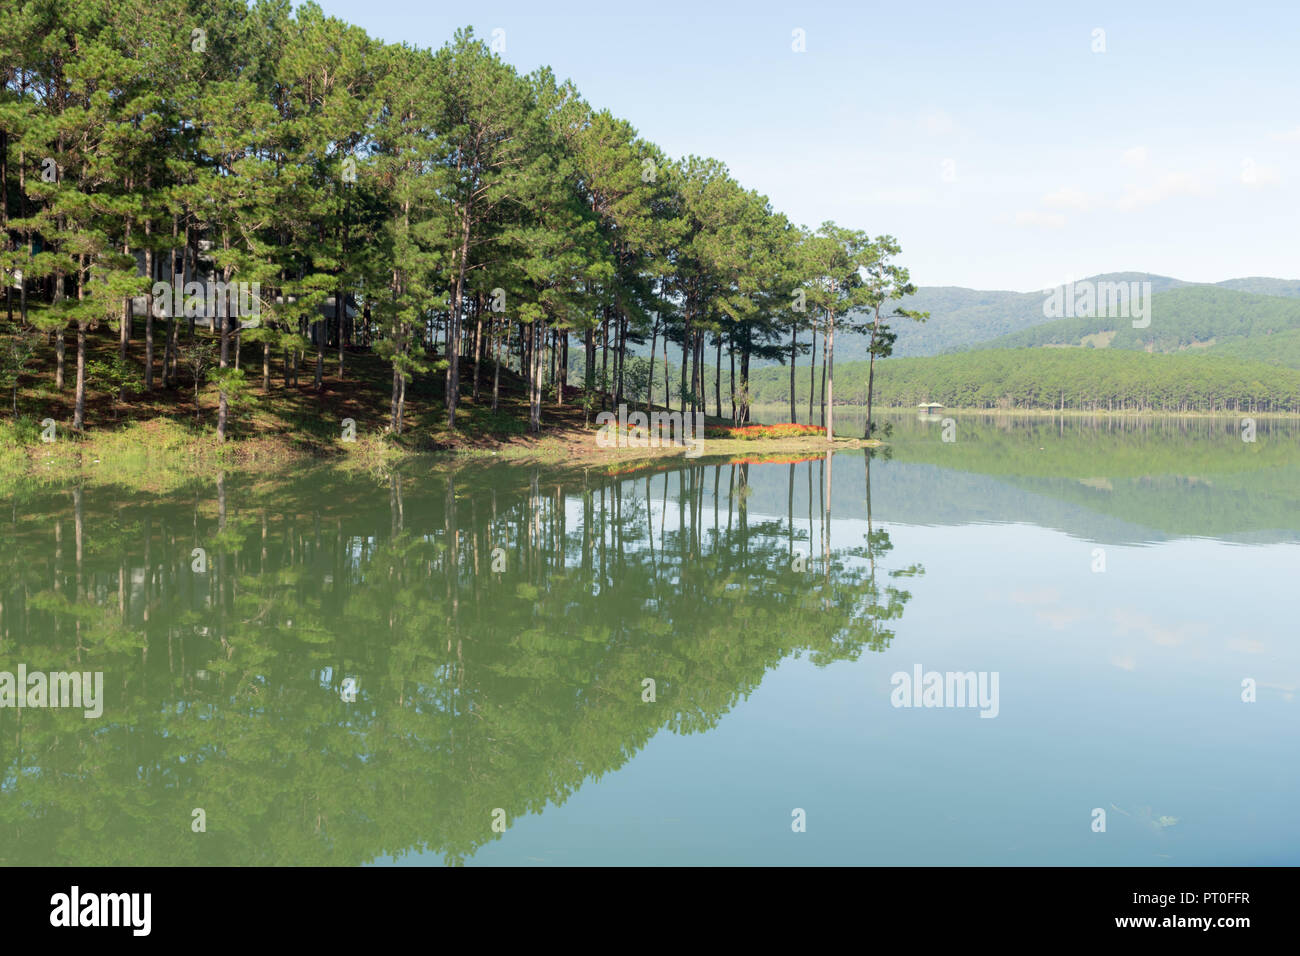 Foresta di Pini isola la riflessione sul lago con aria fresca e la natura, versione panorama Foto Stock